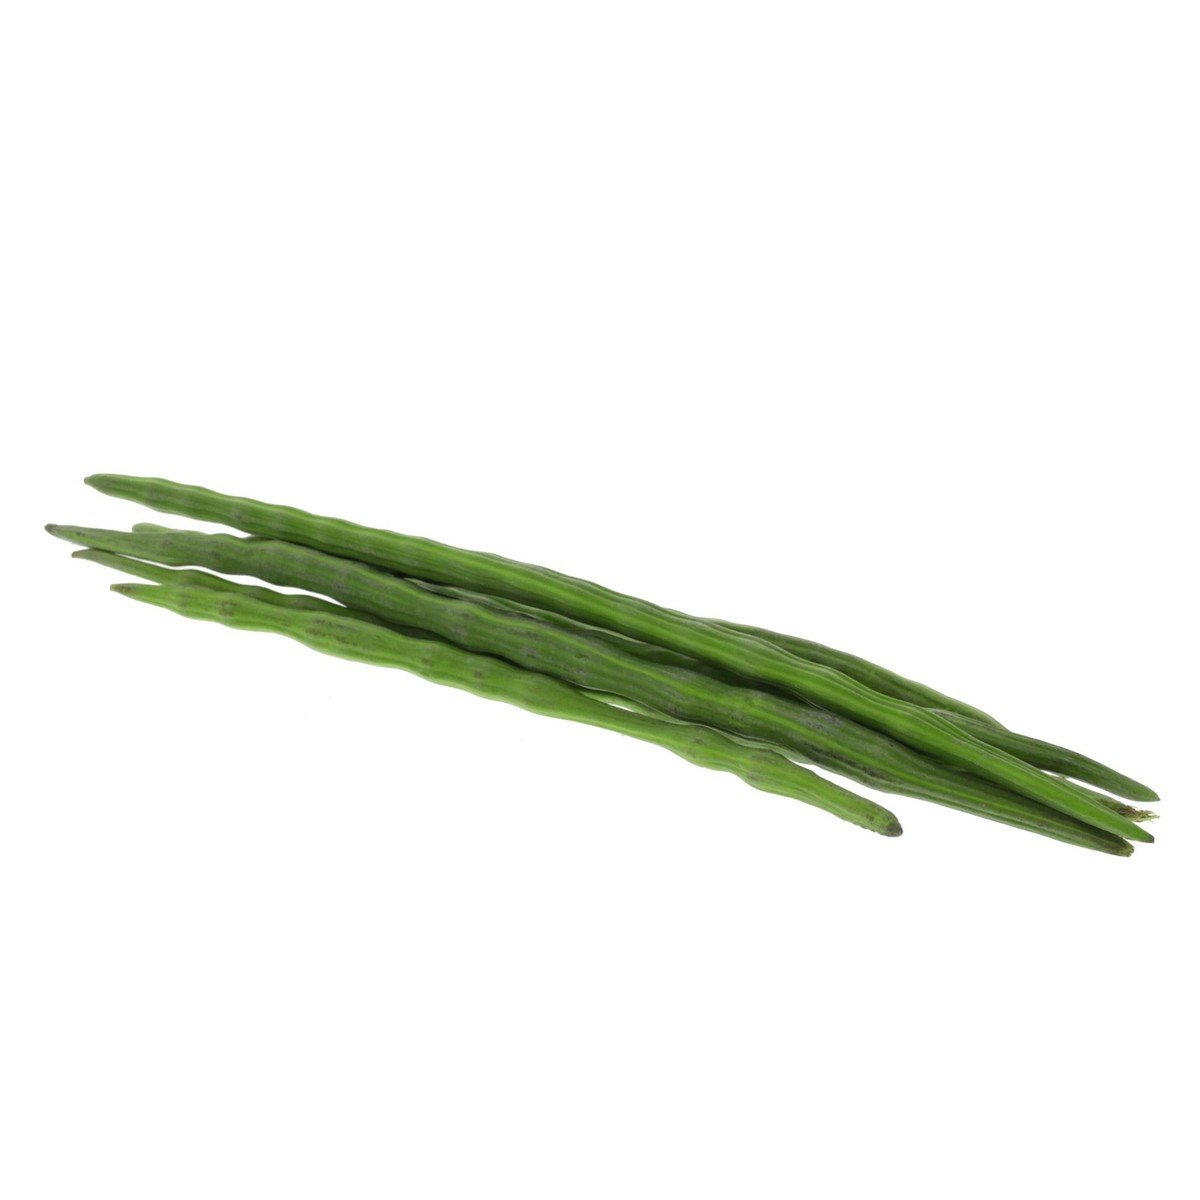 اشتري قم بشراء مارينجا طازجة هندي 3 قطعة Online at Best Price من الموقع - من لولو هايبر ماركت Green Vegetables في السعودية